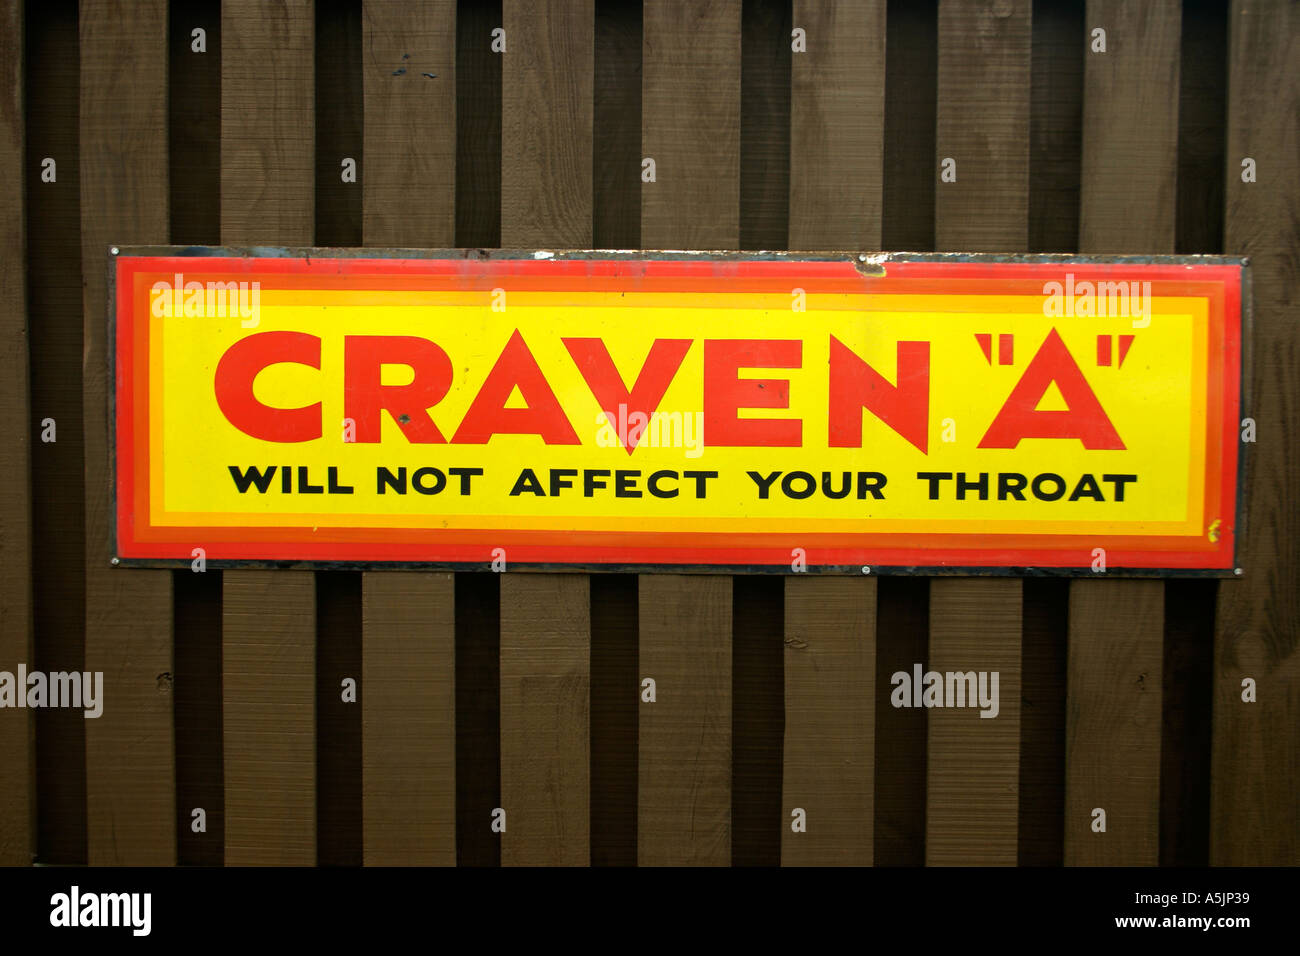 Annuncio retrò per Craven una sigarette Foto Stock